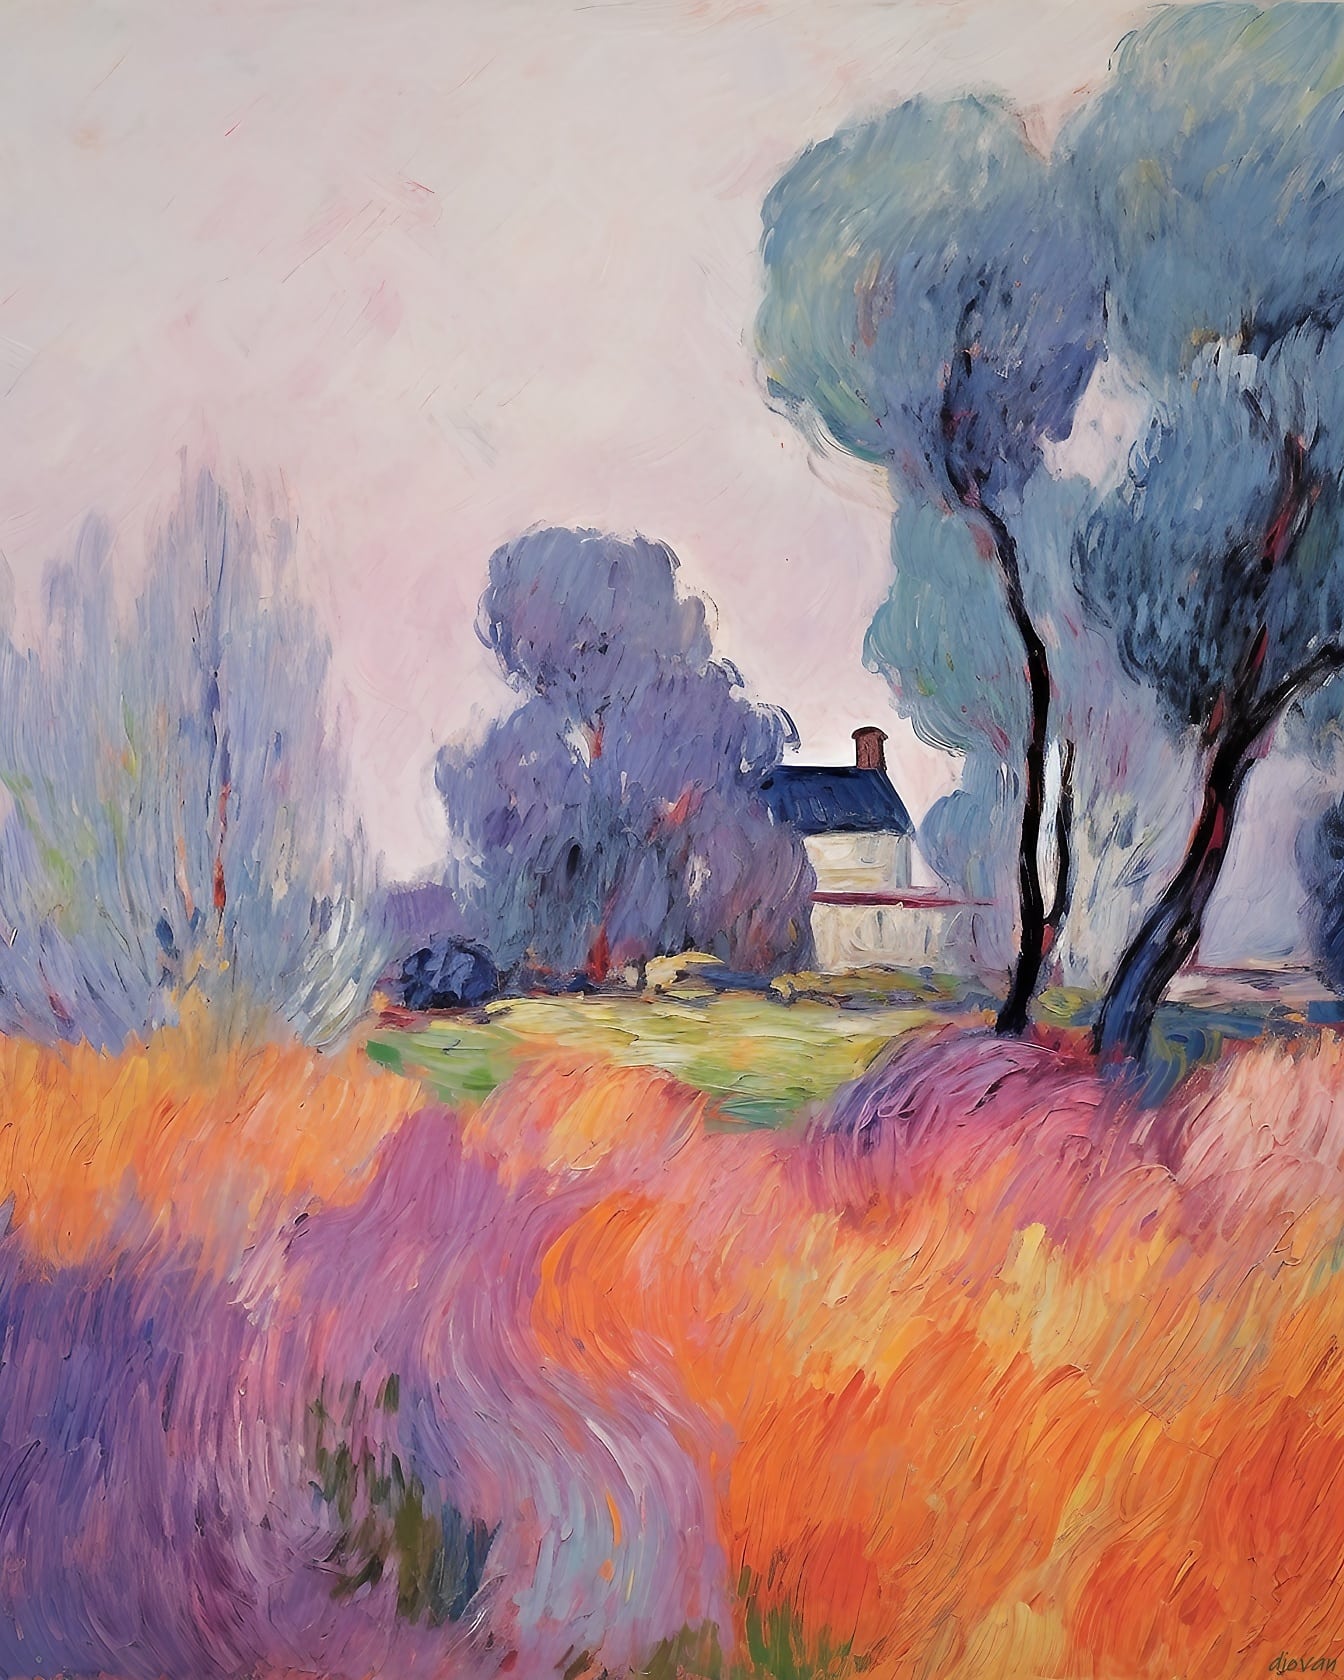 Talon ja puiden maalaus purppuranpunaisella akryylimaalilla